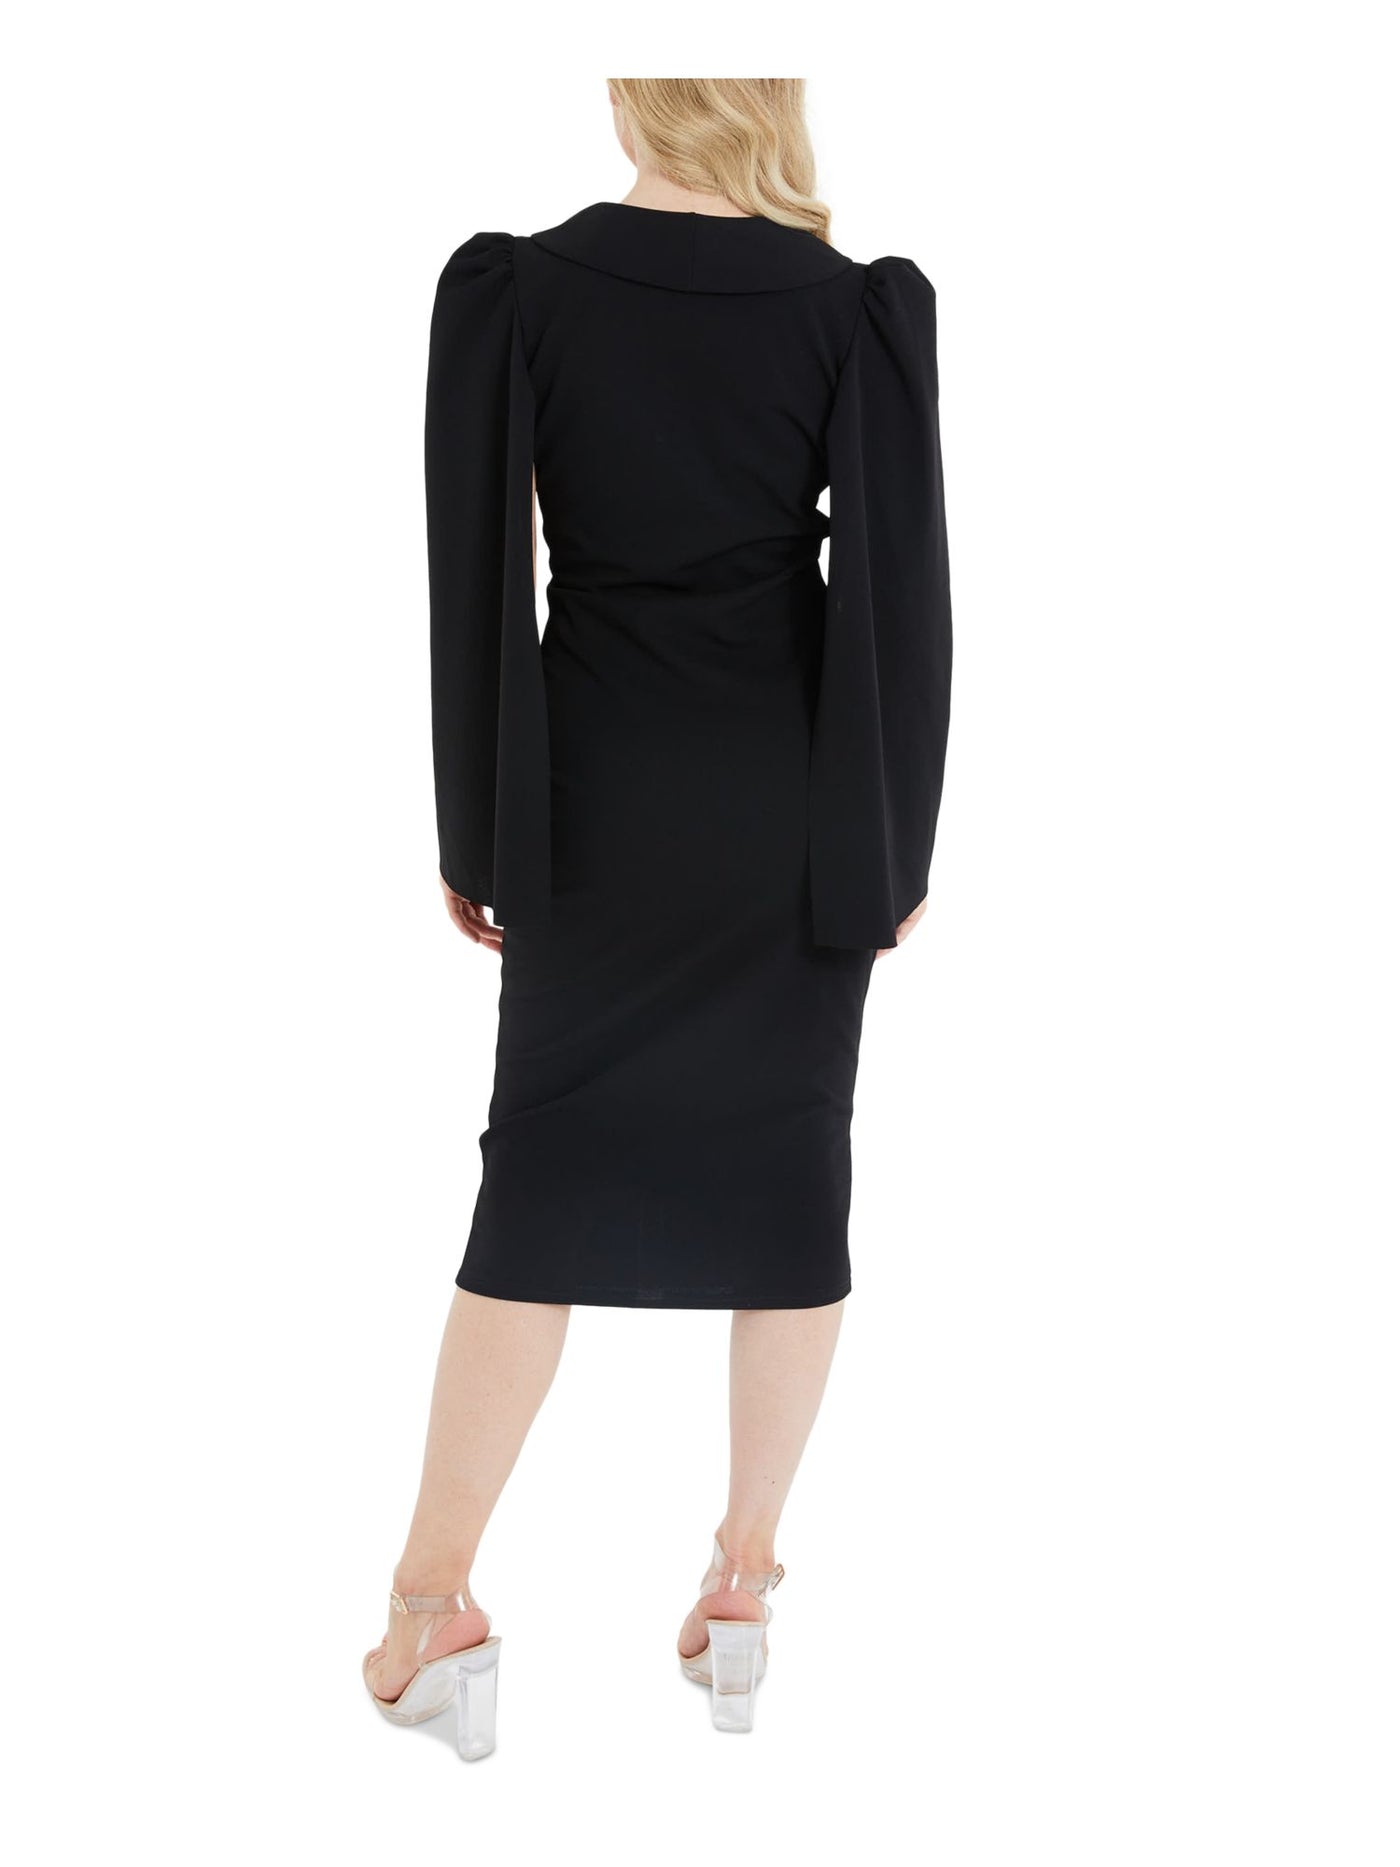 QUIZ Womens Black Long Sleeve Surplice Neckline Below The Knee Wear To Work Faux Wrap Dress 6